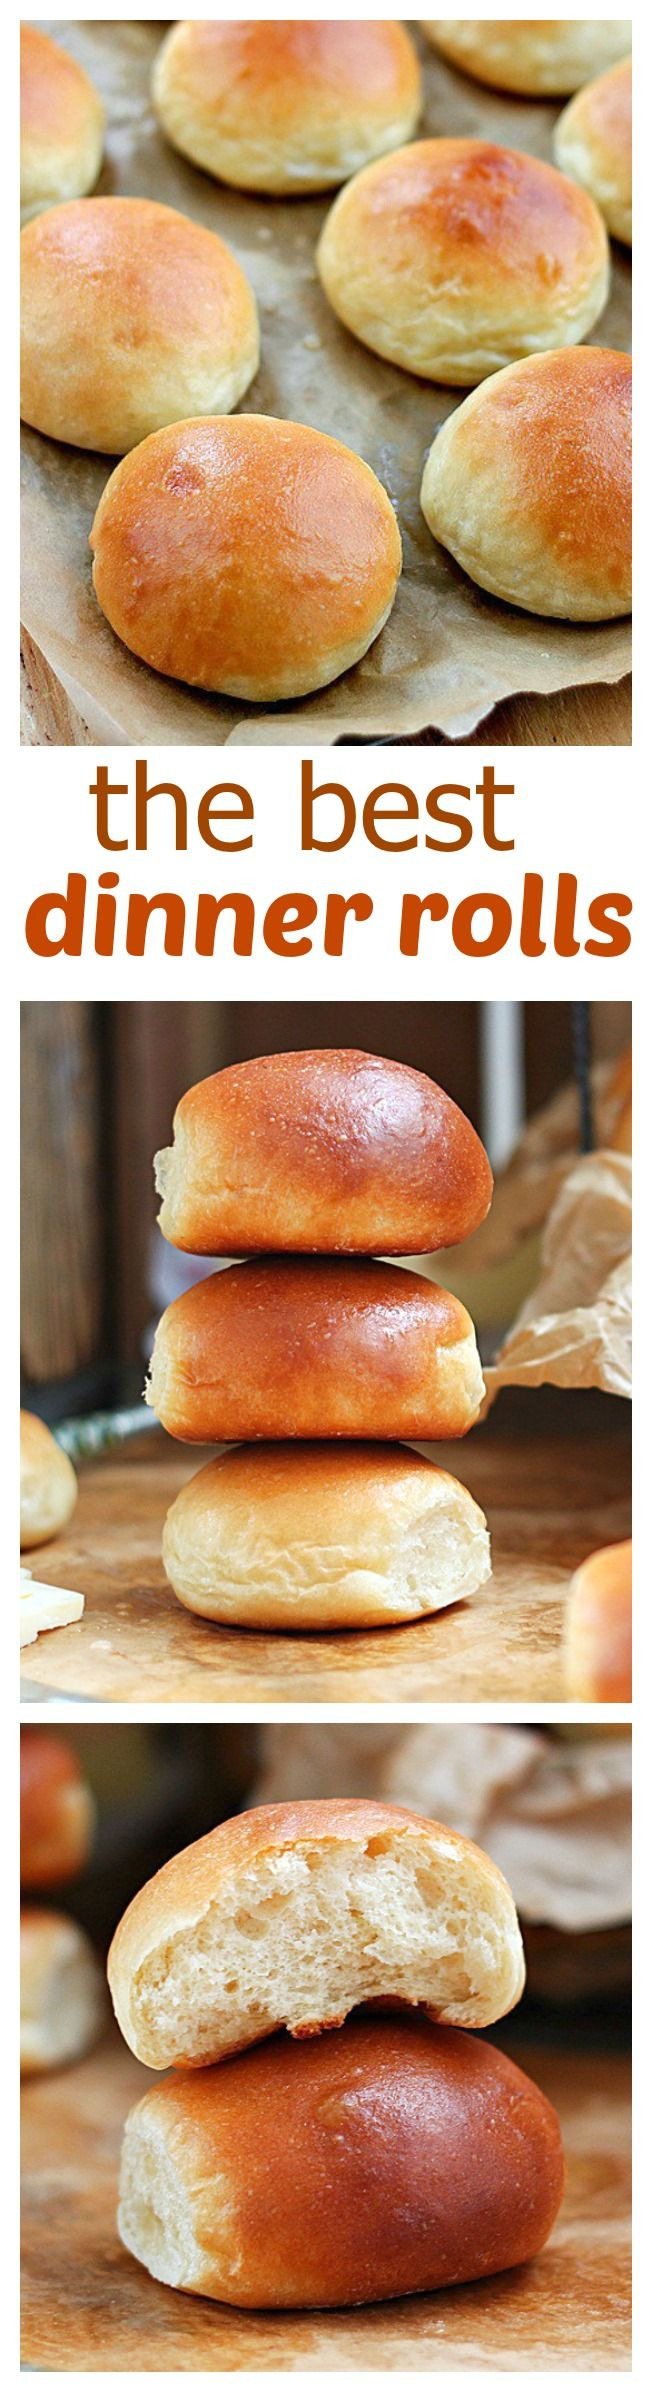 Best Dinner Rolls Recipe
 The best homemade dinner rolls recipe from scratch